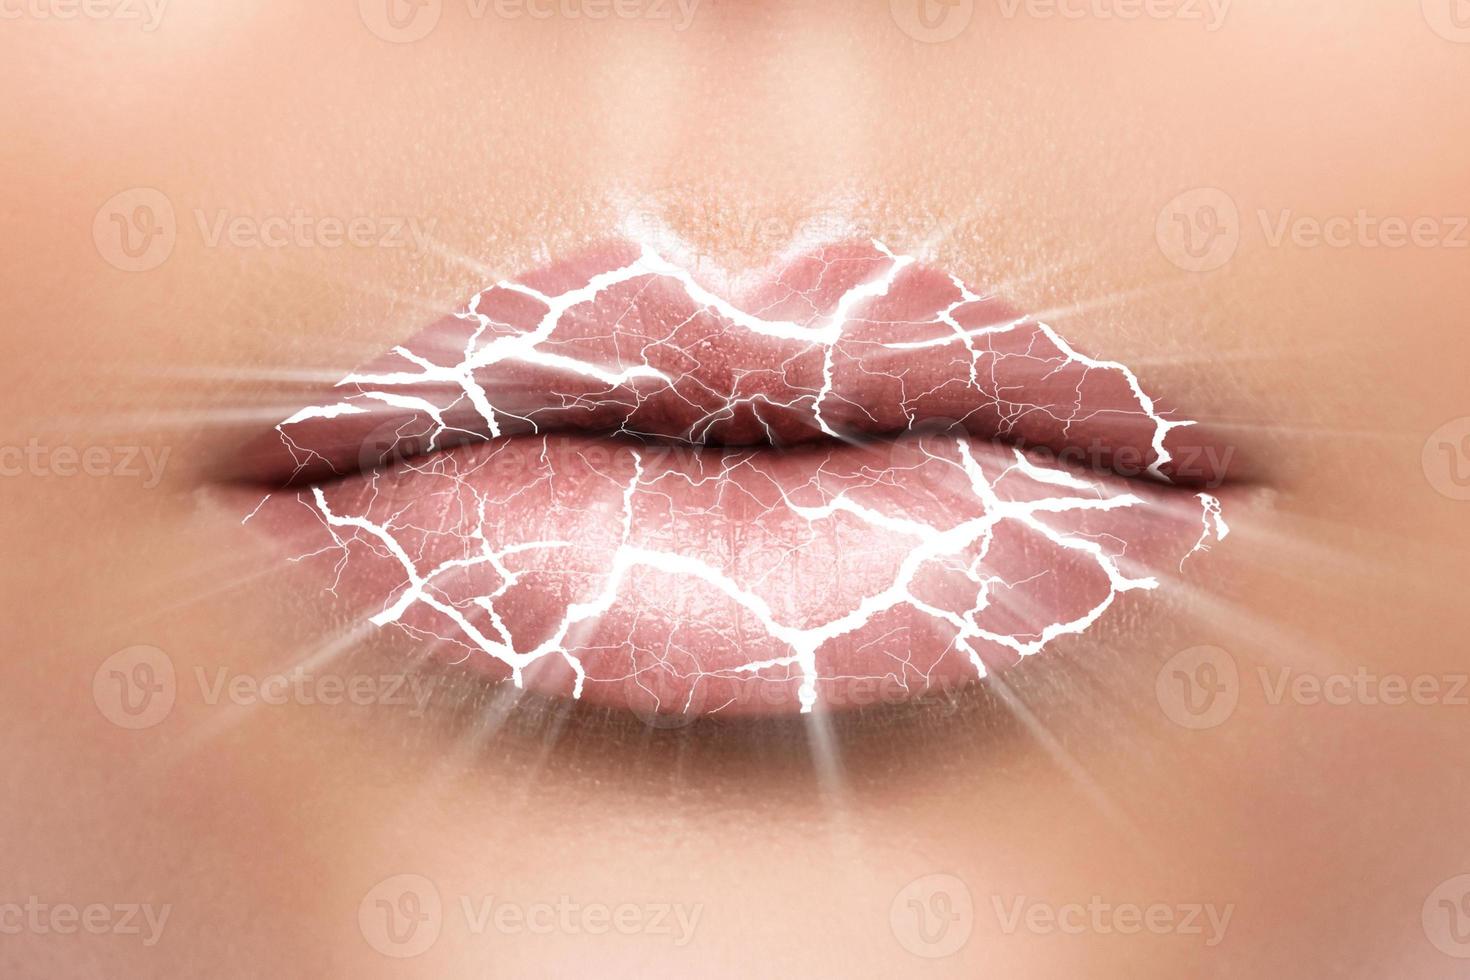 detailopname van kloven lippen met een scheuren foto